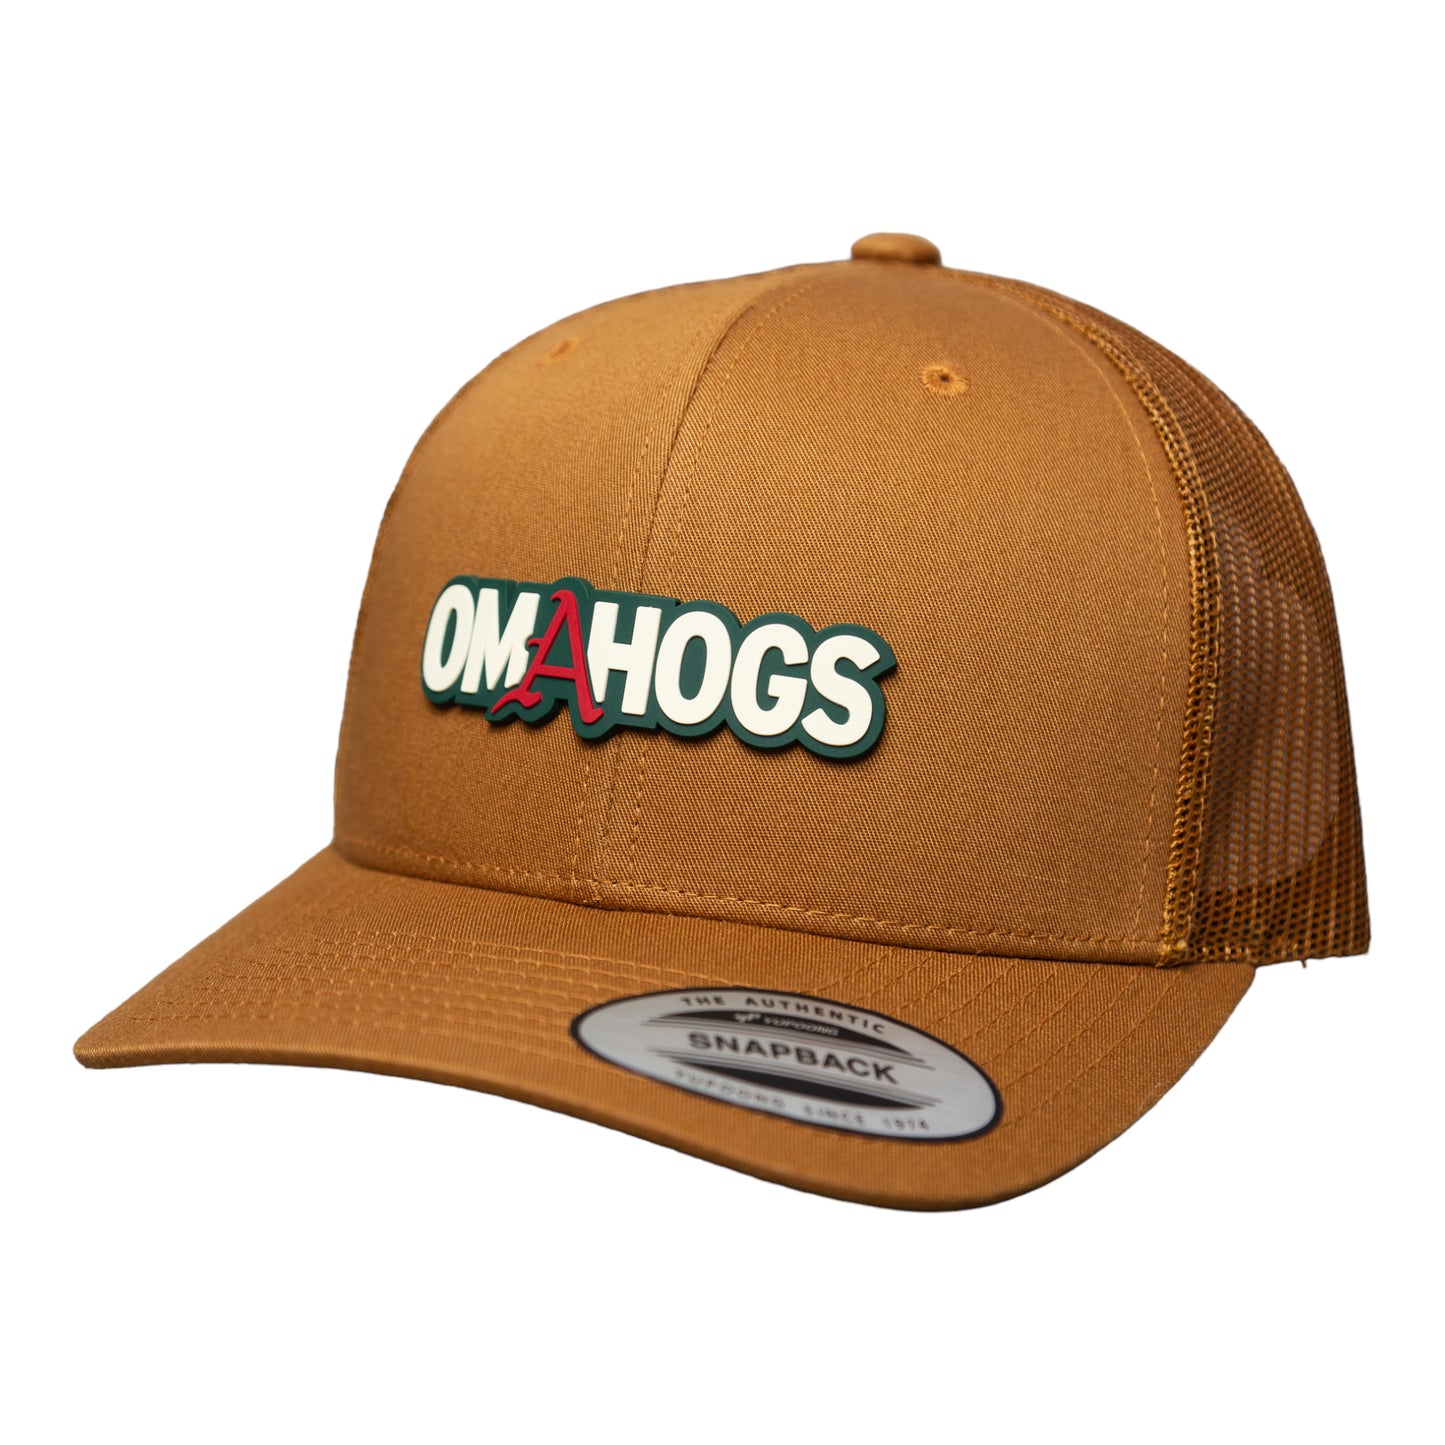 Arkansas Razorbacks OMAHOGS 3D YP Snapback Trucker Hat- Caramel